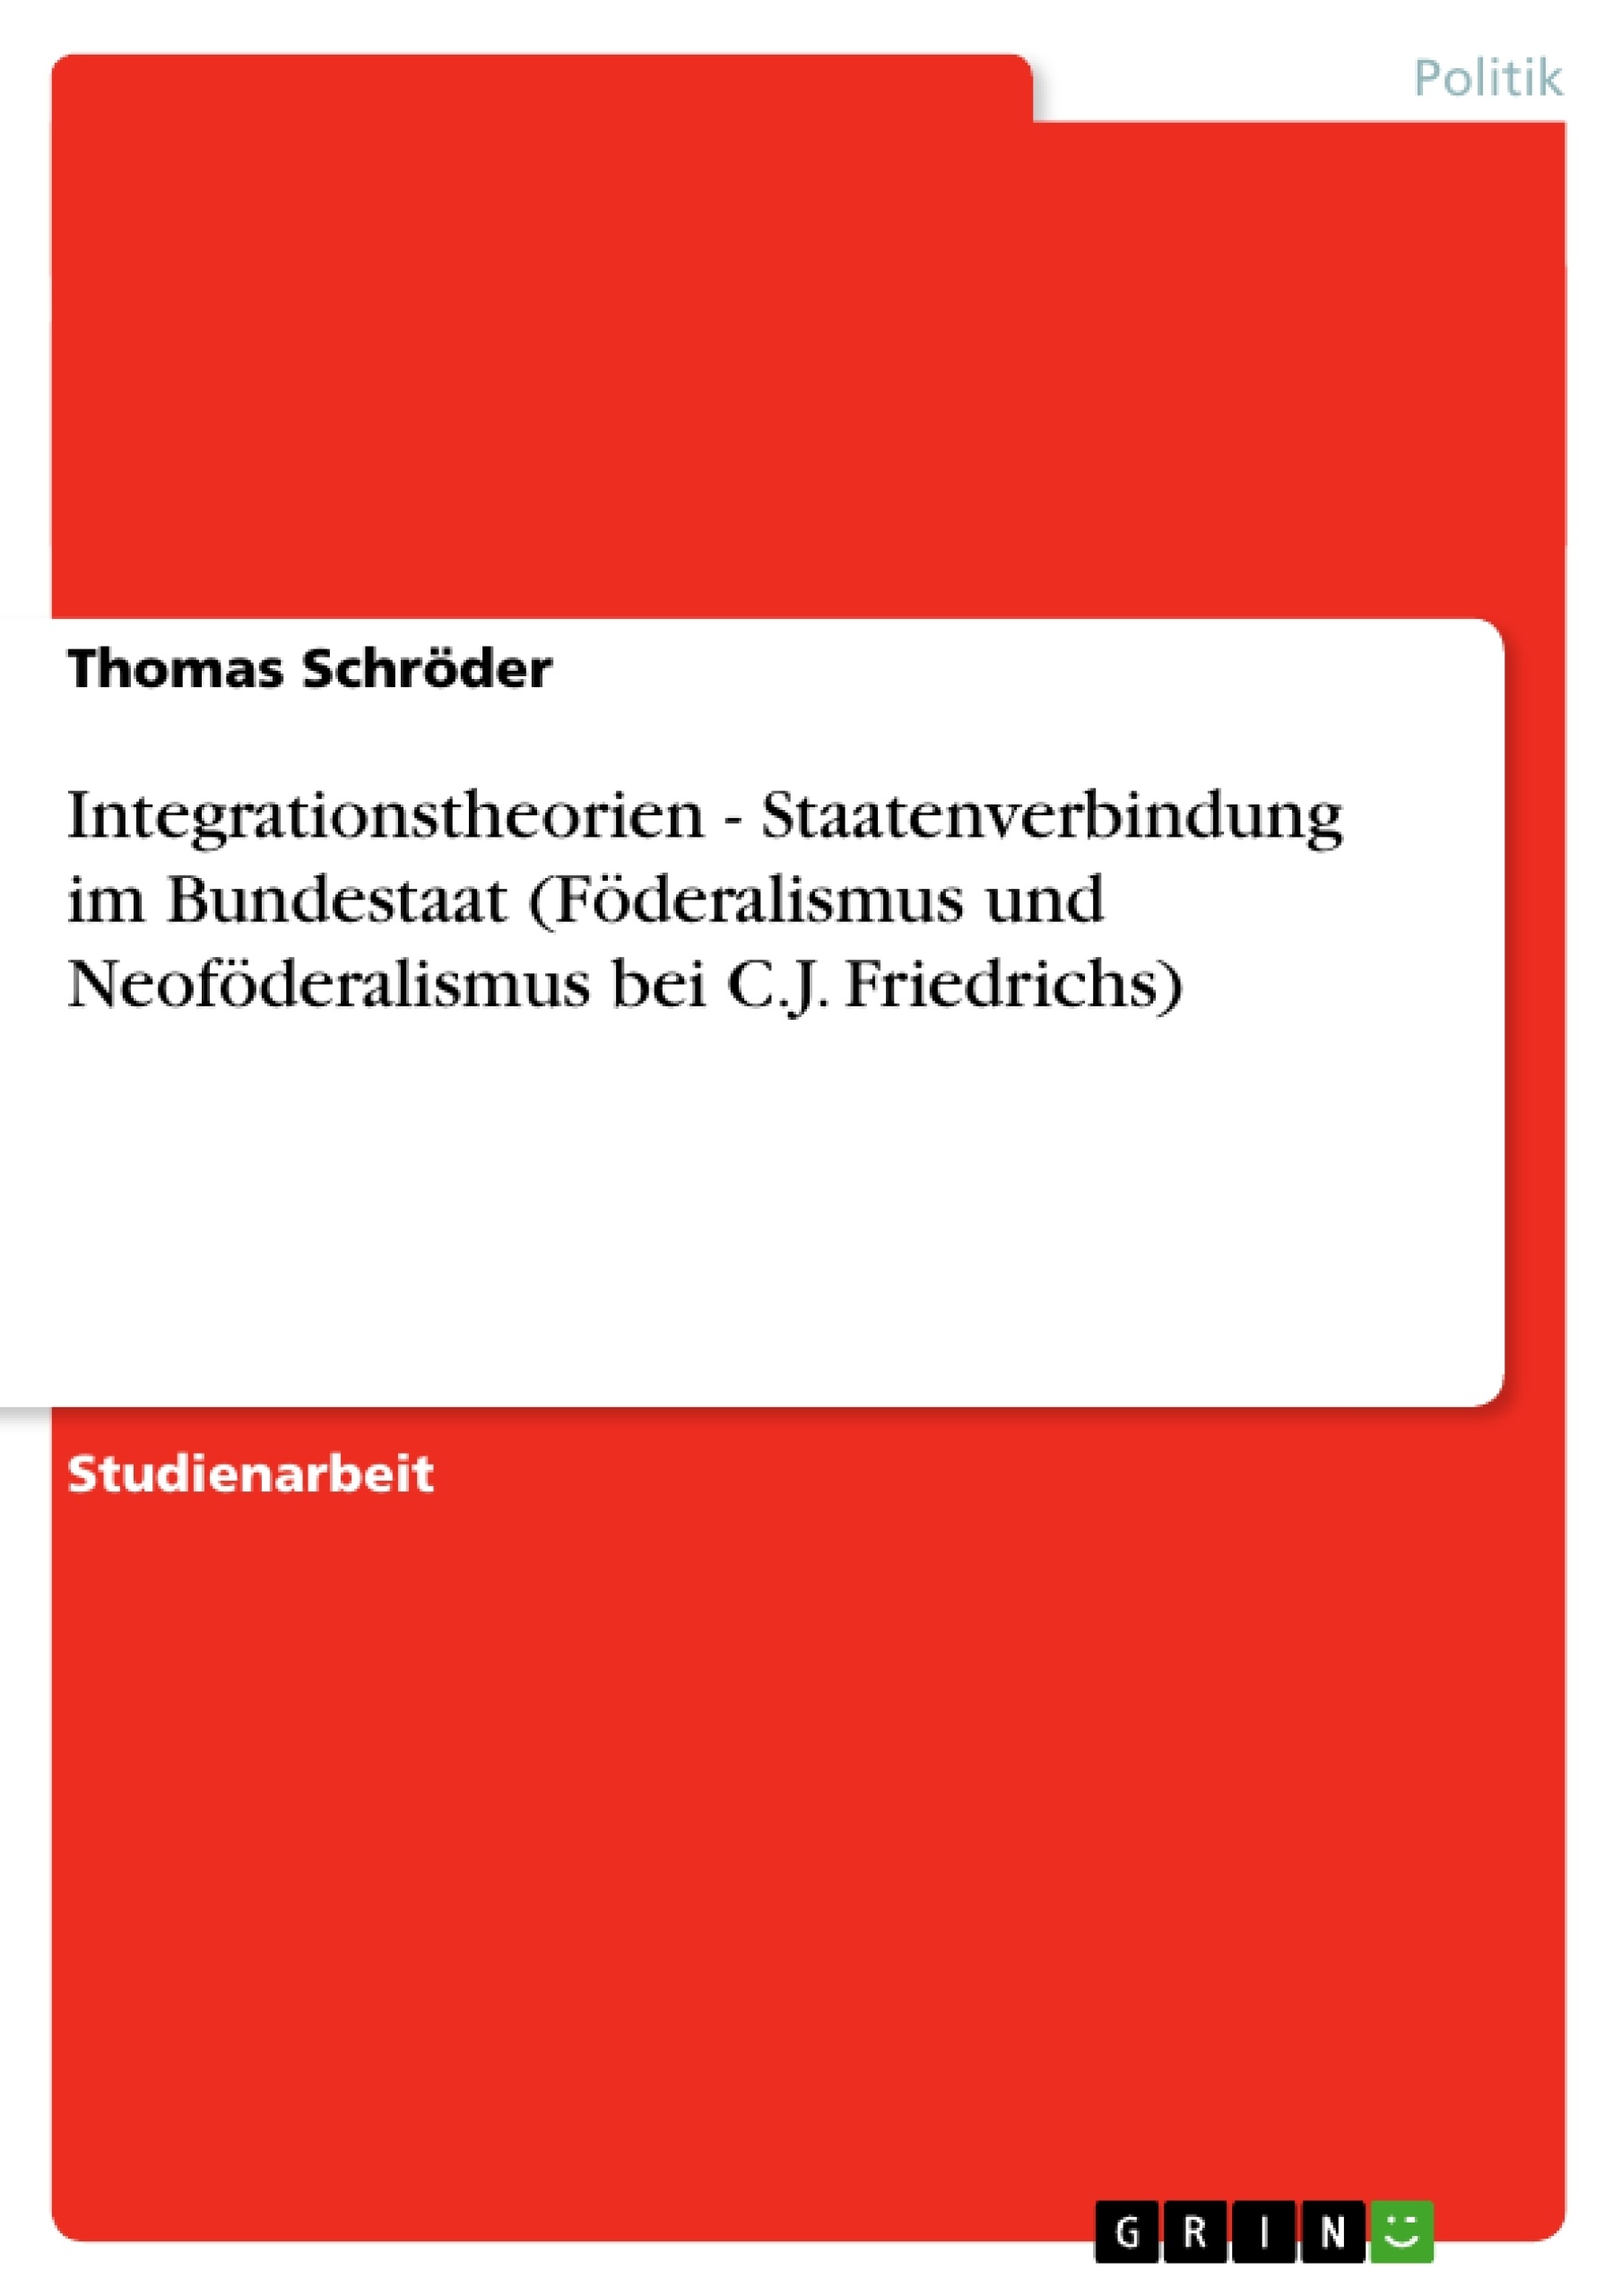 Título: Integrationstheorien - Staatenverbindung im Bundestaat (Föderalismus und Neoföderalismus bei C.J. Friedrichs)